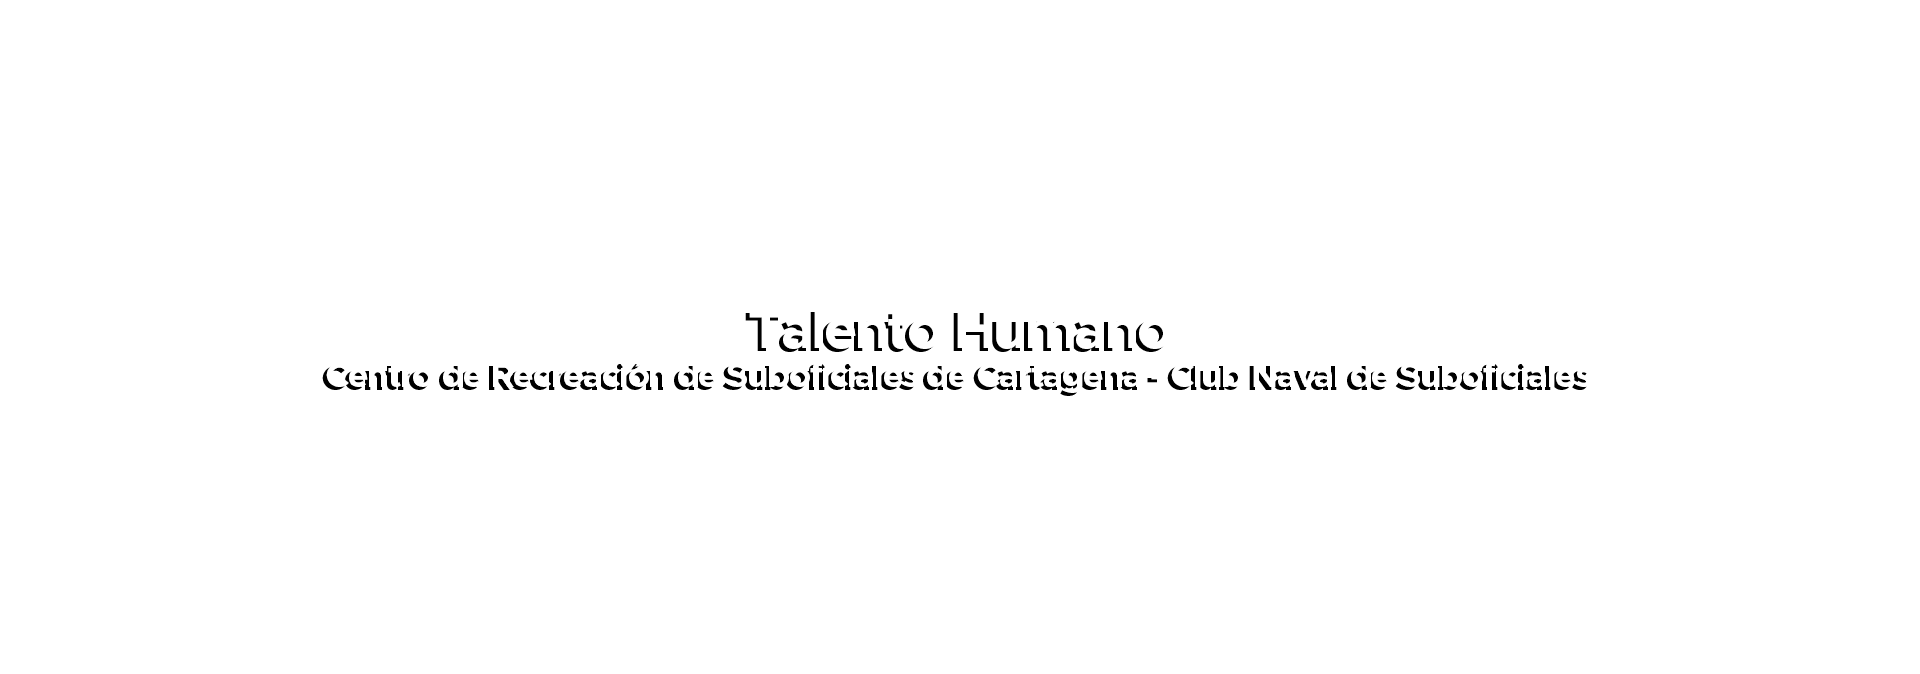 Talento Humano_Texto